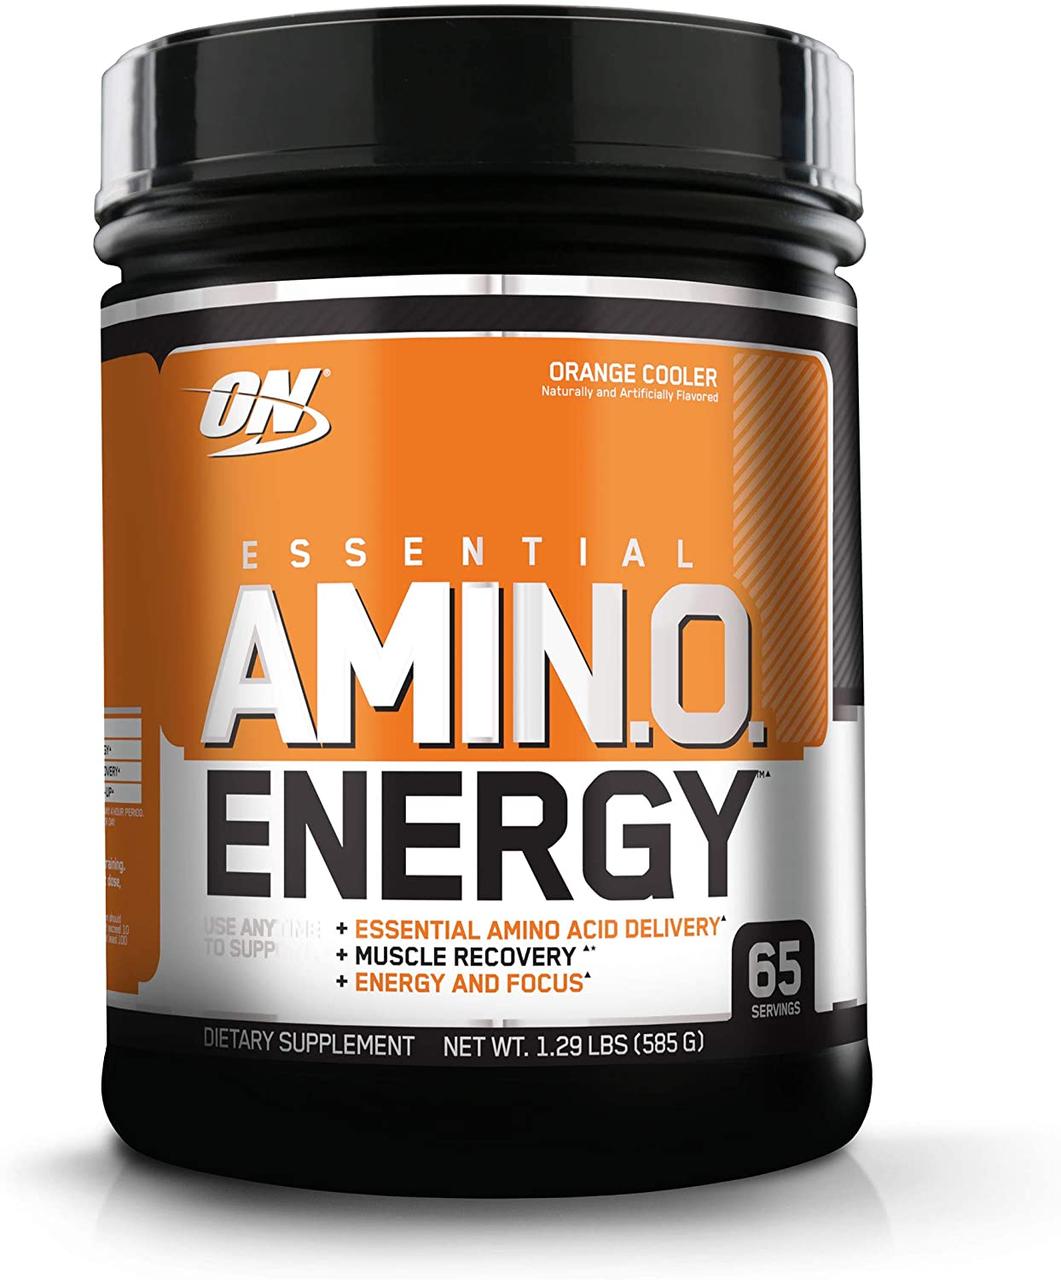 Комплекс аминокислот Optimum Nutrition Amino Energy (585 г) оптимум амино энерджи orange cooler,  ml, Optimum Nutrition. Complejo de aminoácidos. 